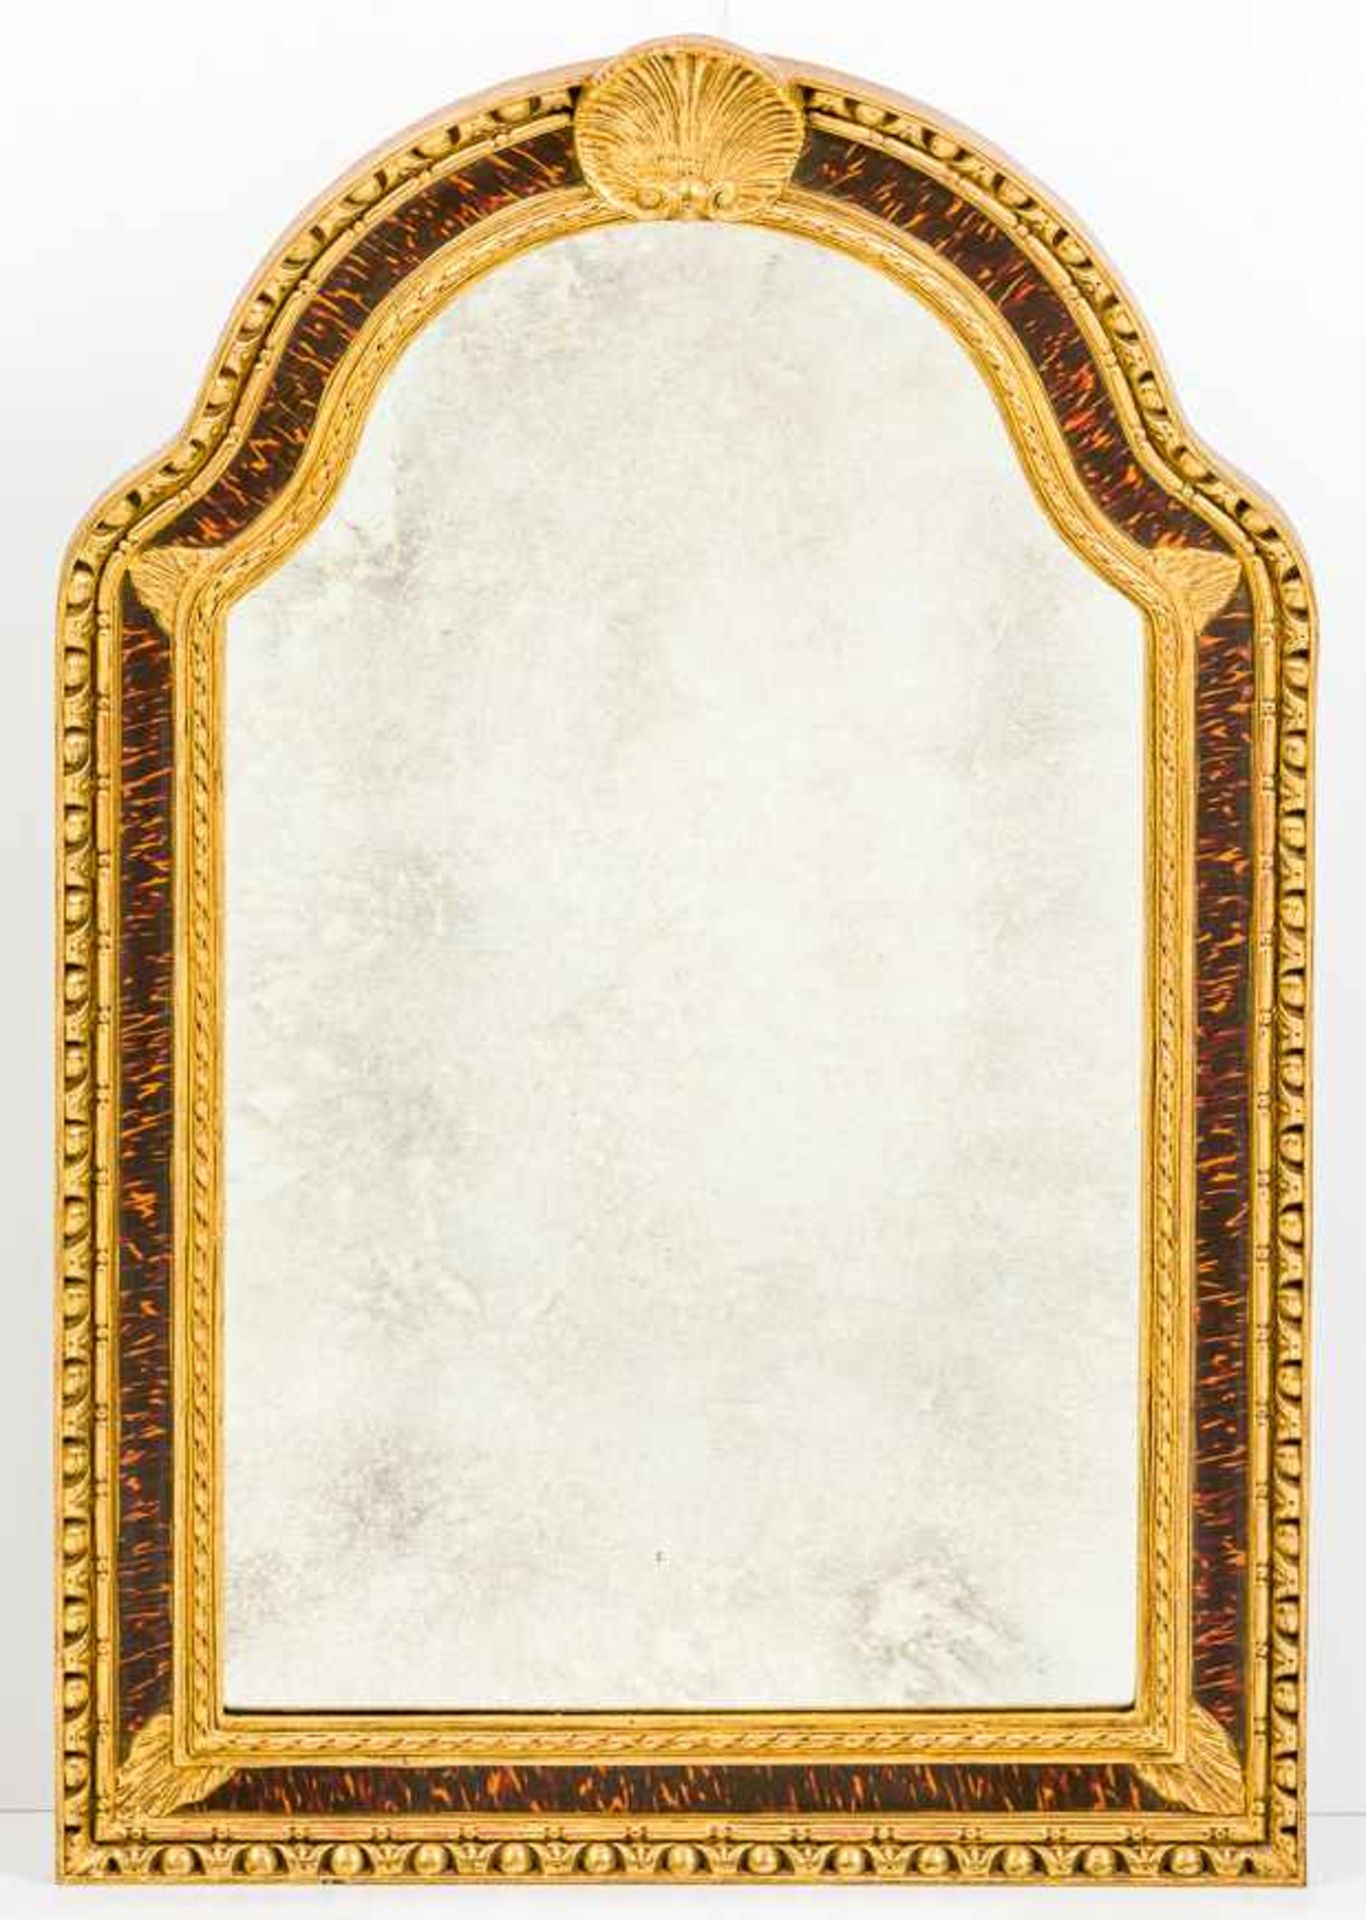 SpiegelHolz mit Stuck, partiell vergoldet. Der Rahmen in eingezogener Rundbogenform mit Schildpatt-